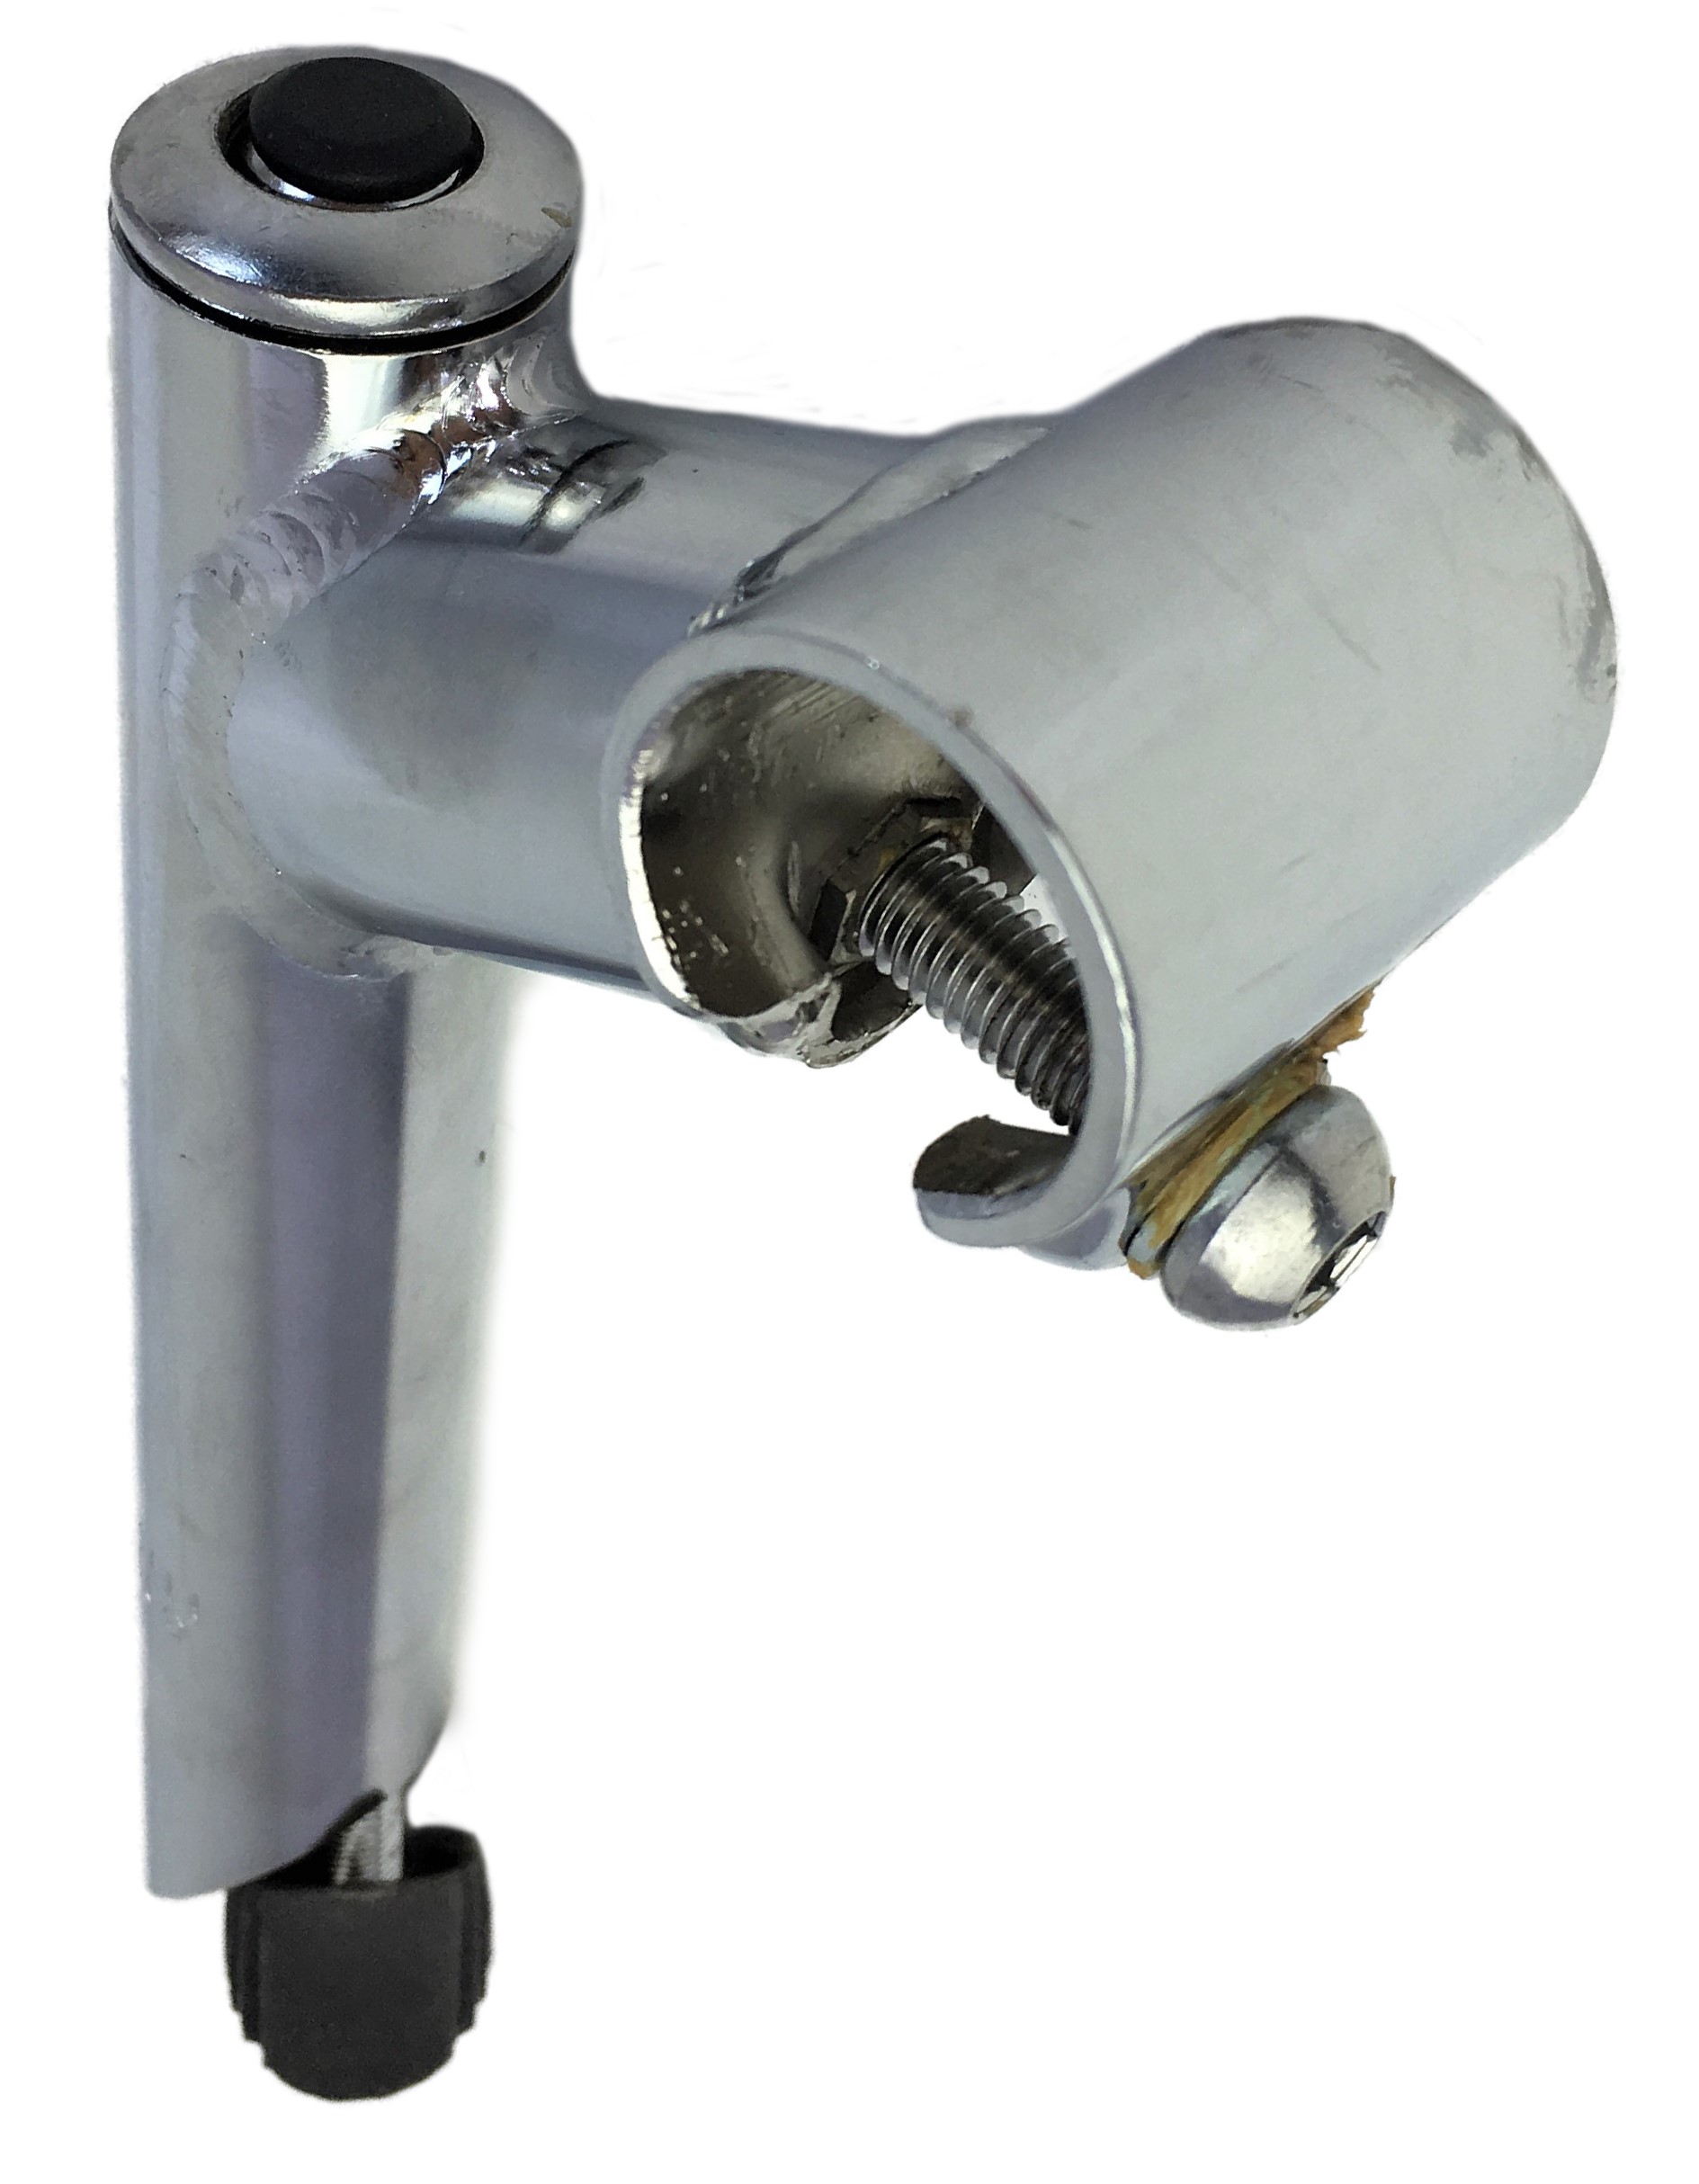 Tija del manillar  25,4 - 25,4 eje de acero con sujeción mediante 1 tornillo cromada Humpert Ergotec CV 101